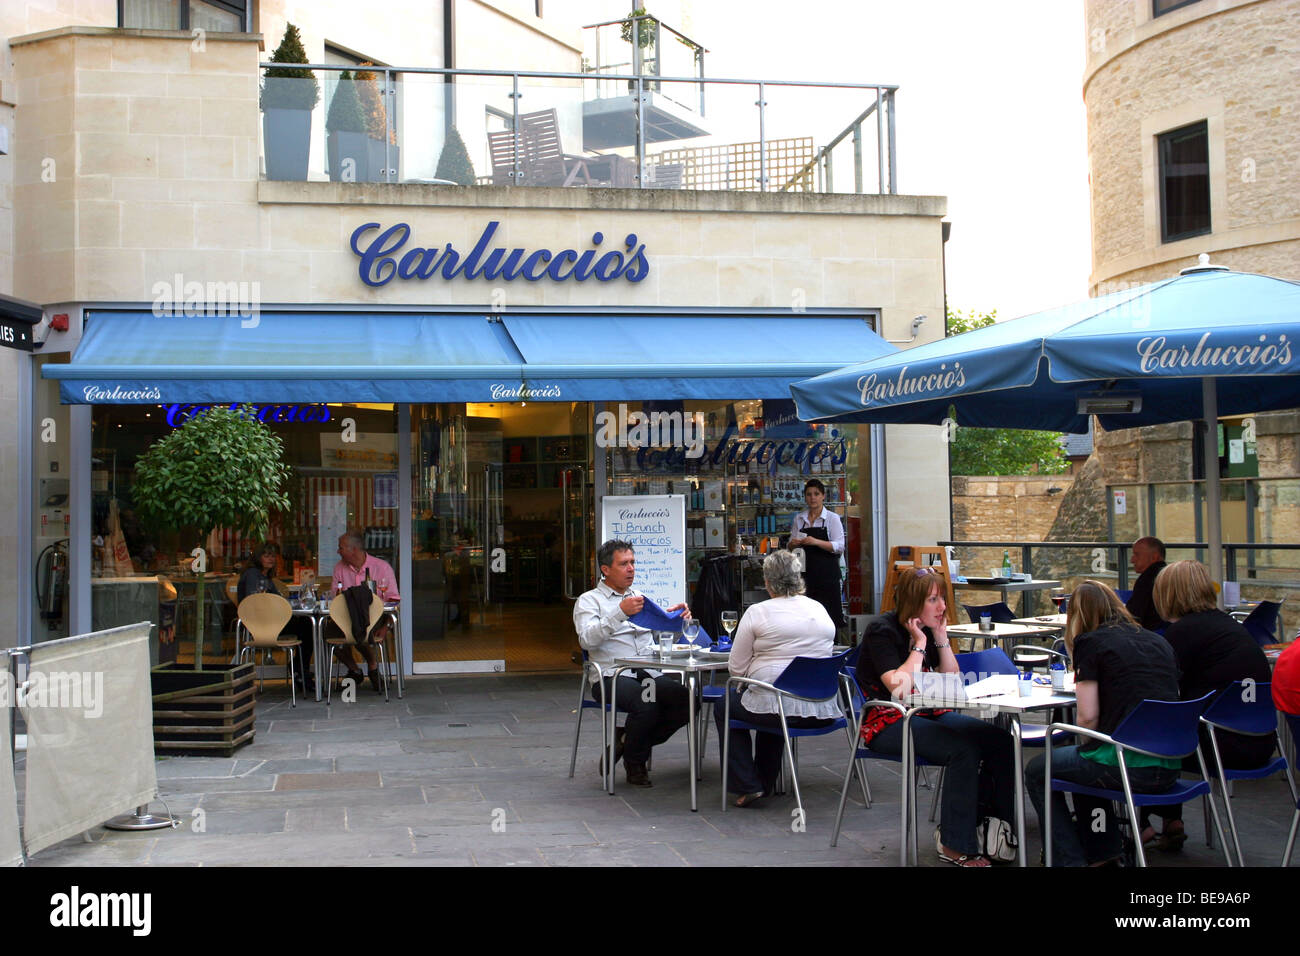 Carluccio es Cafe, Oxford, England, UK Stockfoto